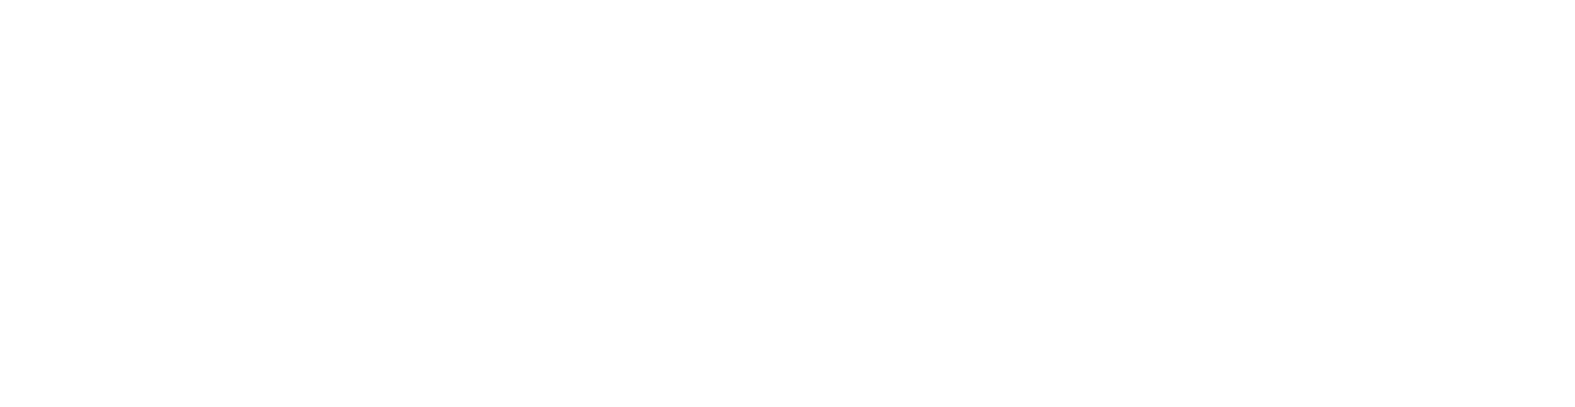 Castellum logo large for dark backgrounds (transparent PNG)